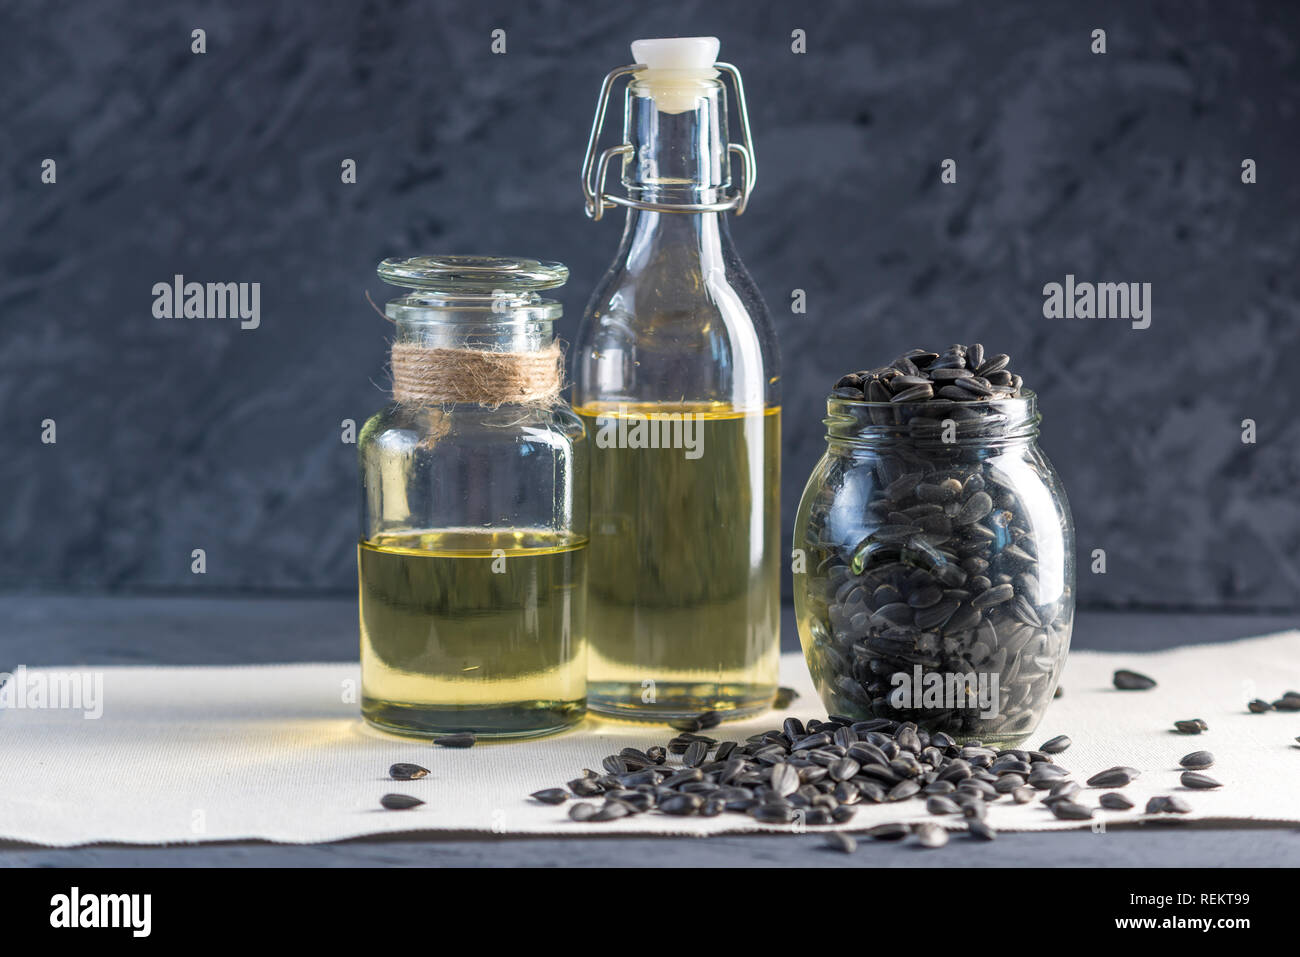 Les graines de tournesol dans un tas d'or et de l'huile dans une bouteille en verre sur la table. Concept alimentation saine avec des graisses végétales. Banque D'Images